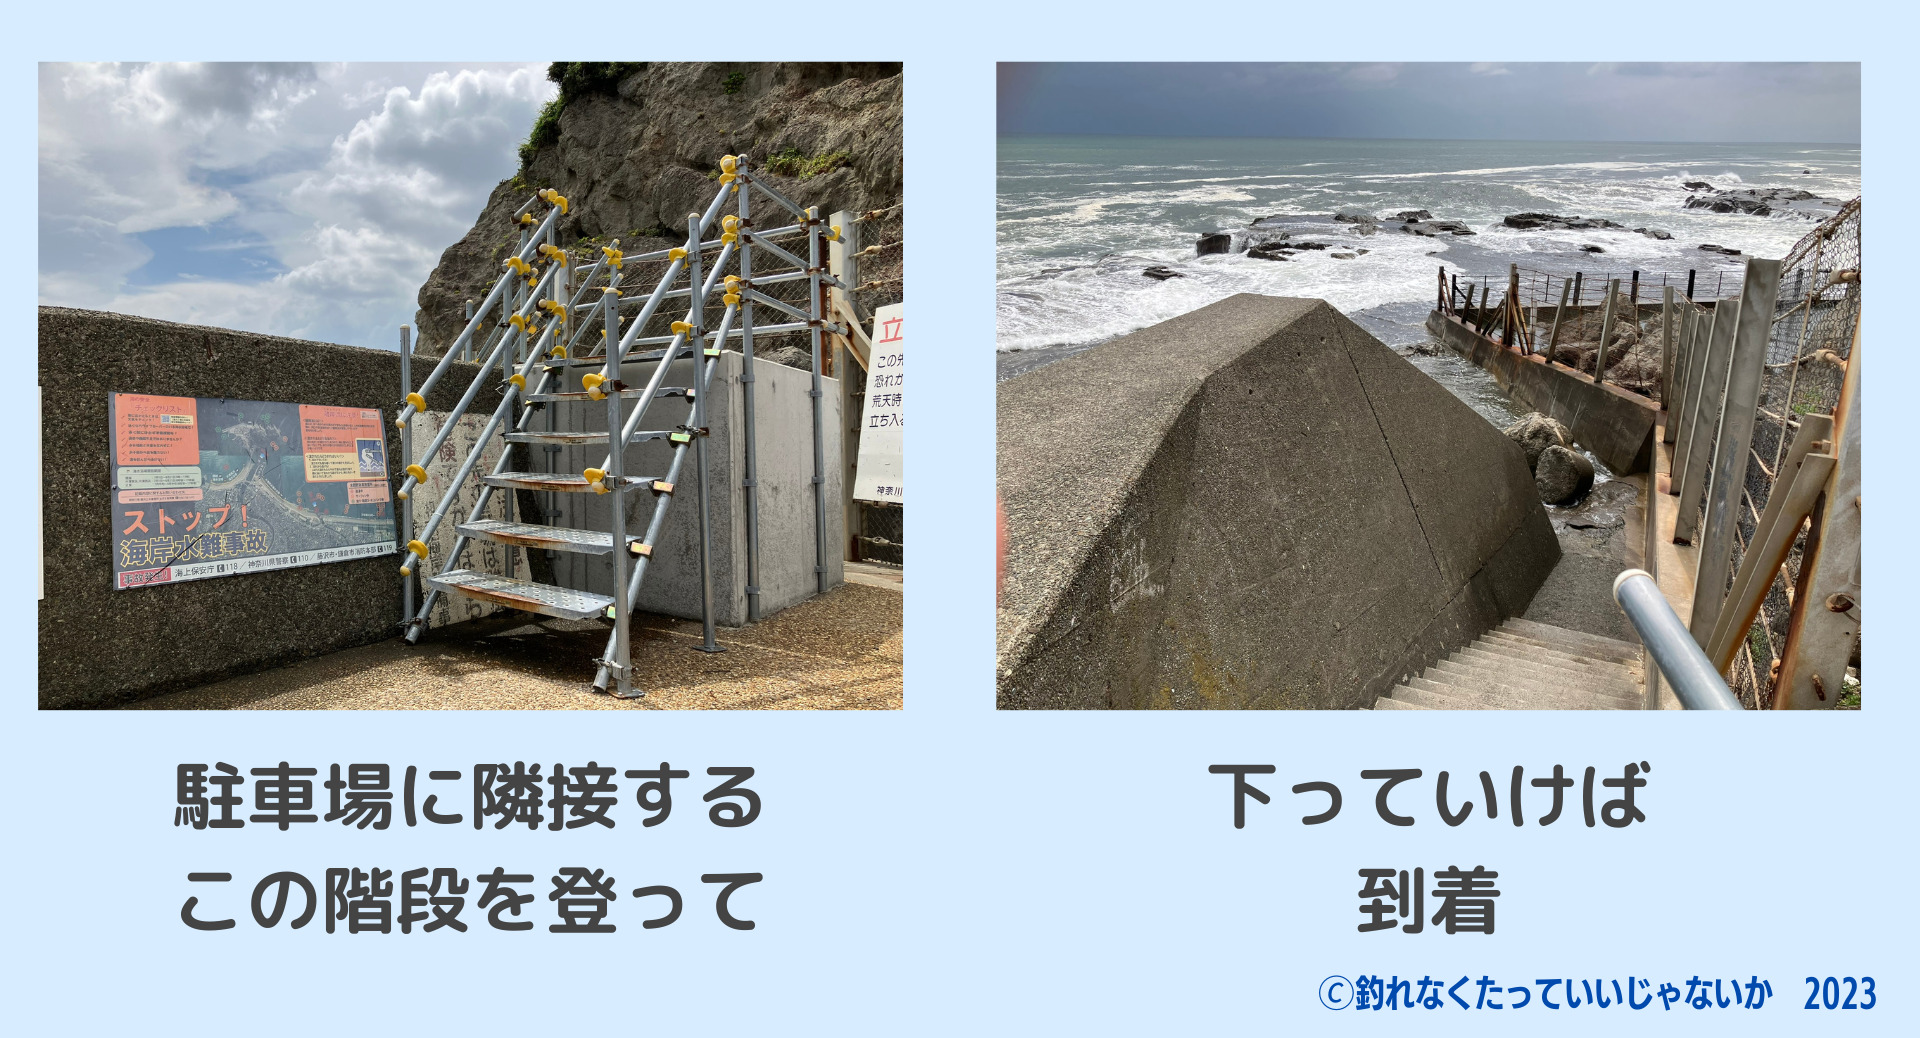 江ノ島の表磯へ続く階段の画像